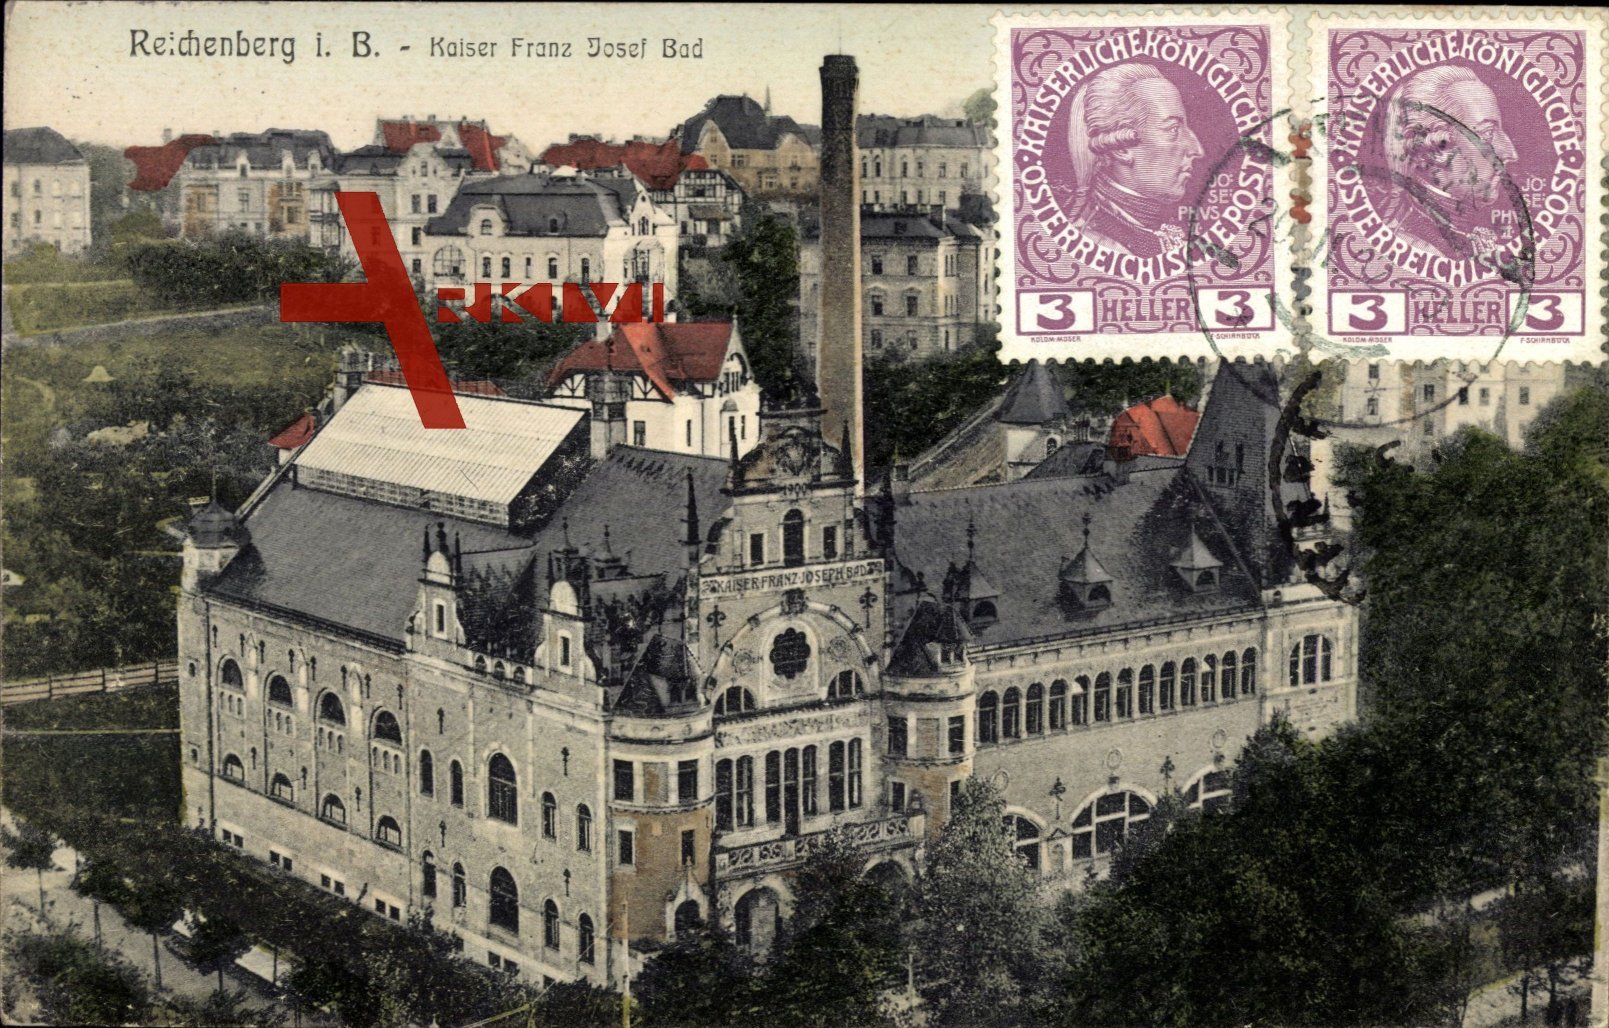 Reichenberg, Blick auf das Kaiser Franz Josef Bad